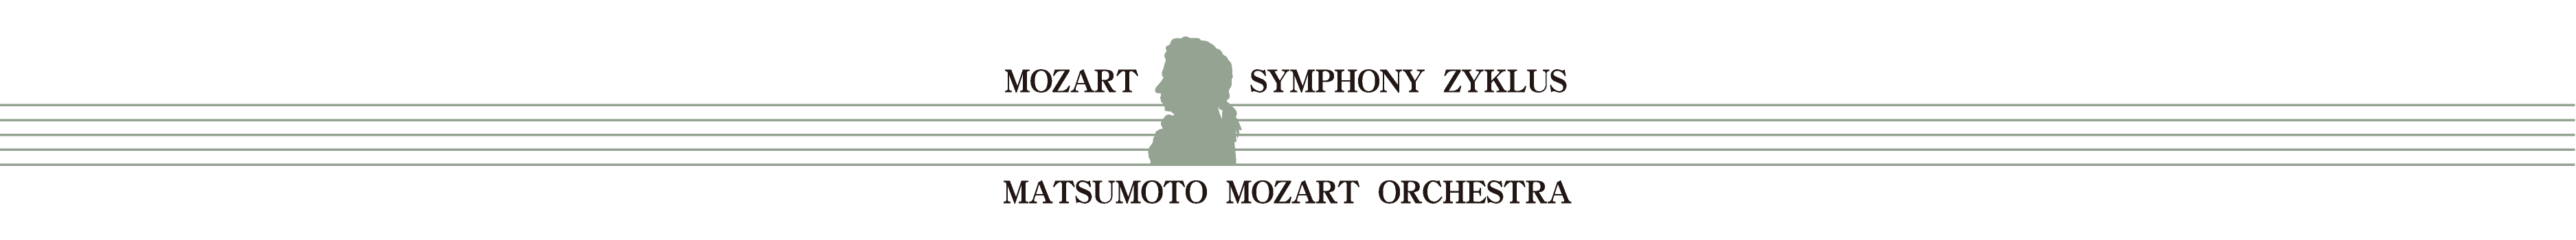 第４回 モーツァルト交響曲・全曲演奏会